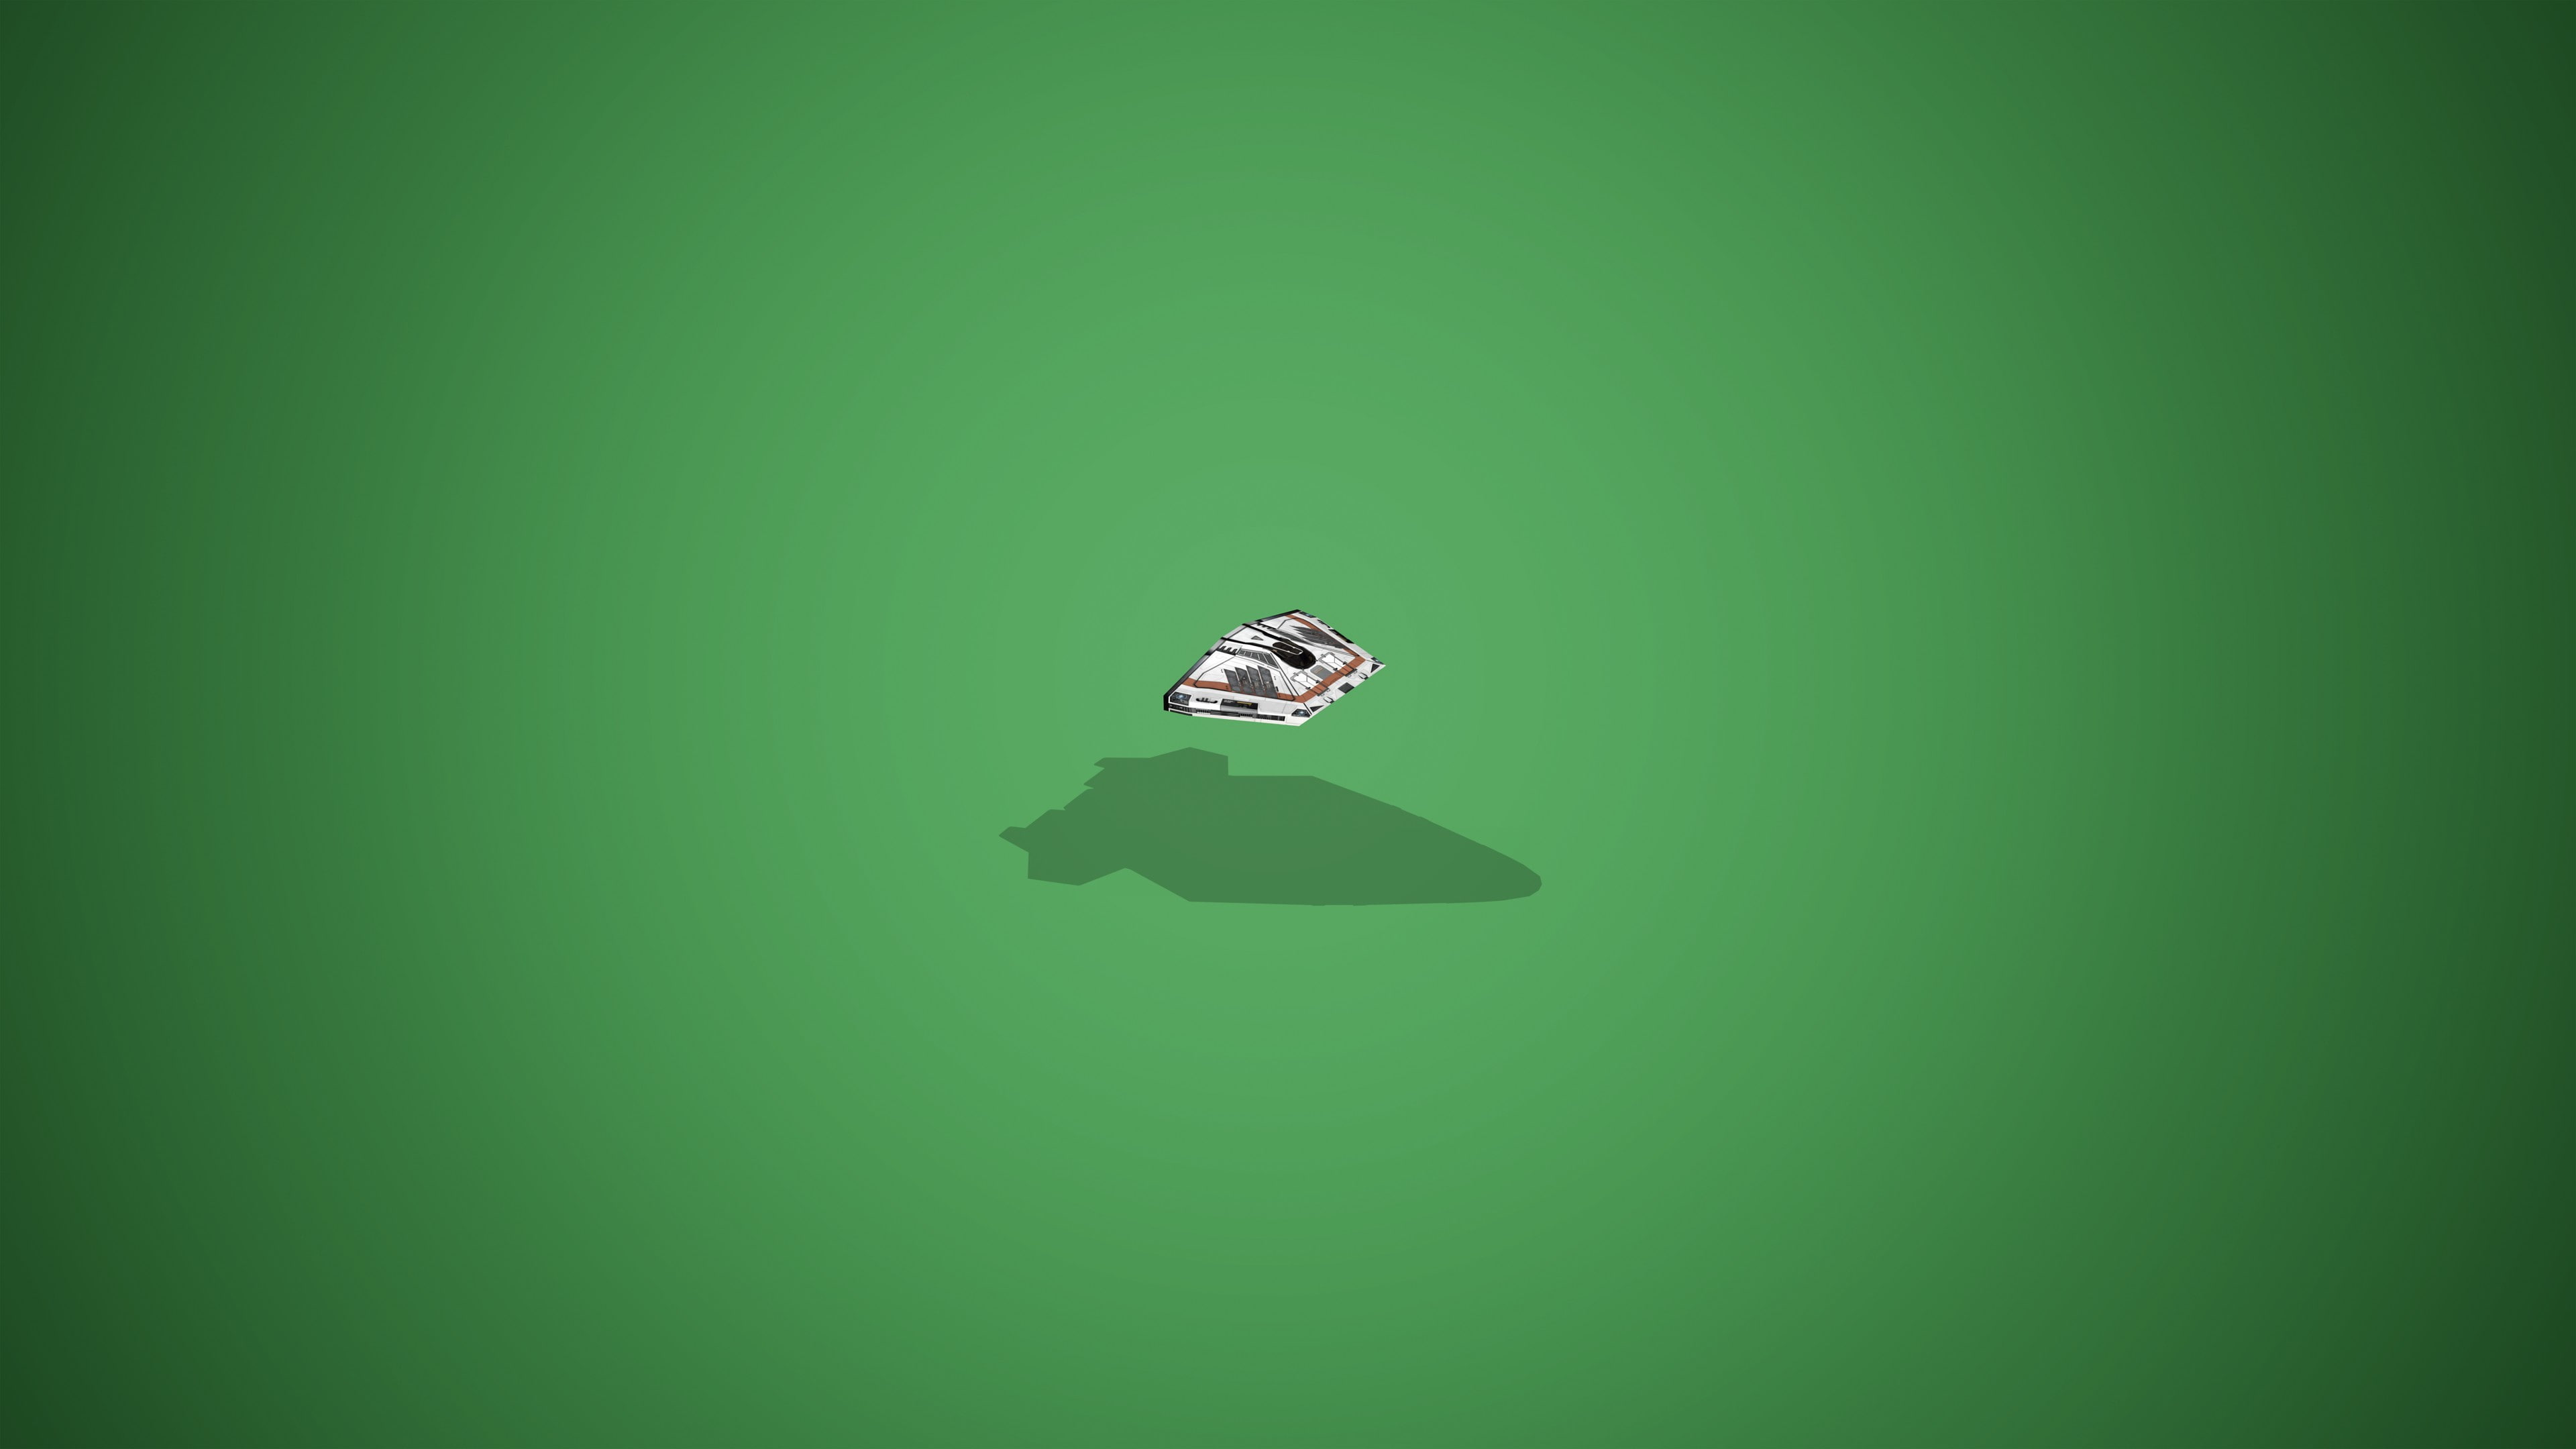 elite dangerous anaconda spaceship sidewinder spaceship, green background